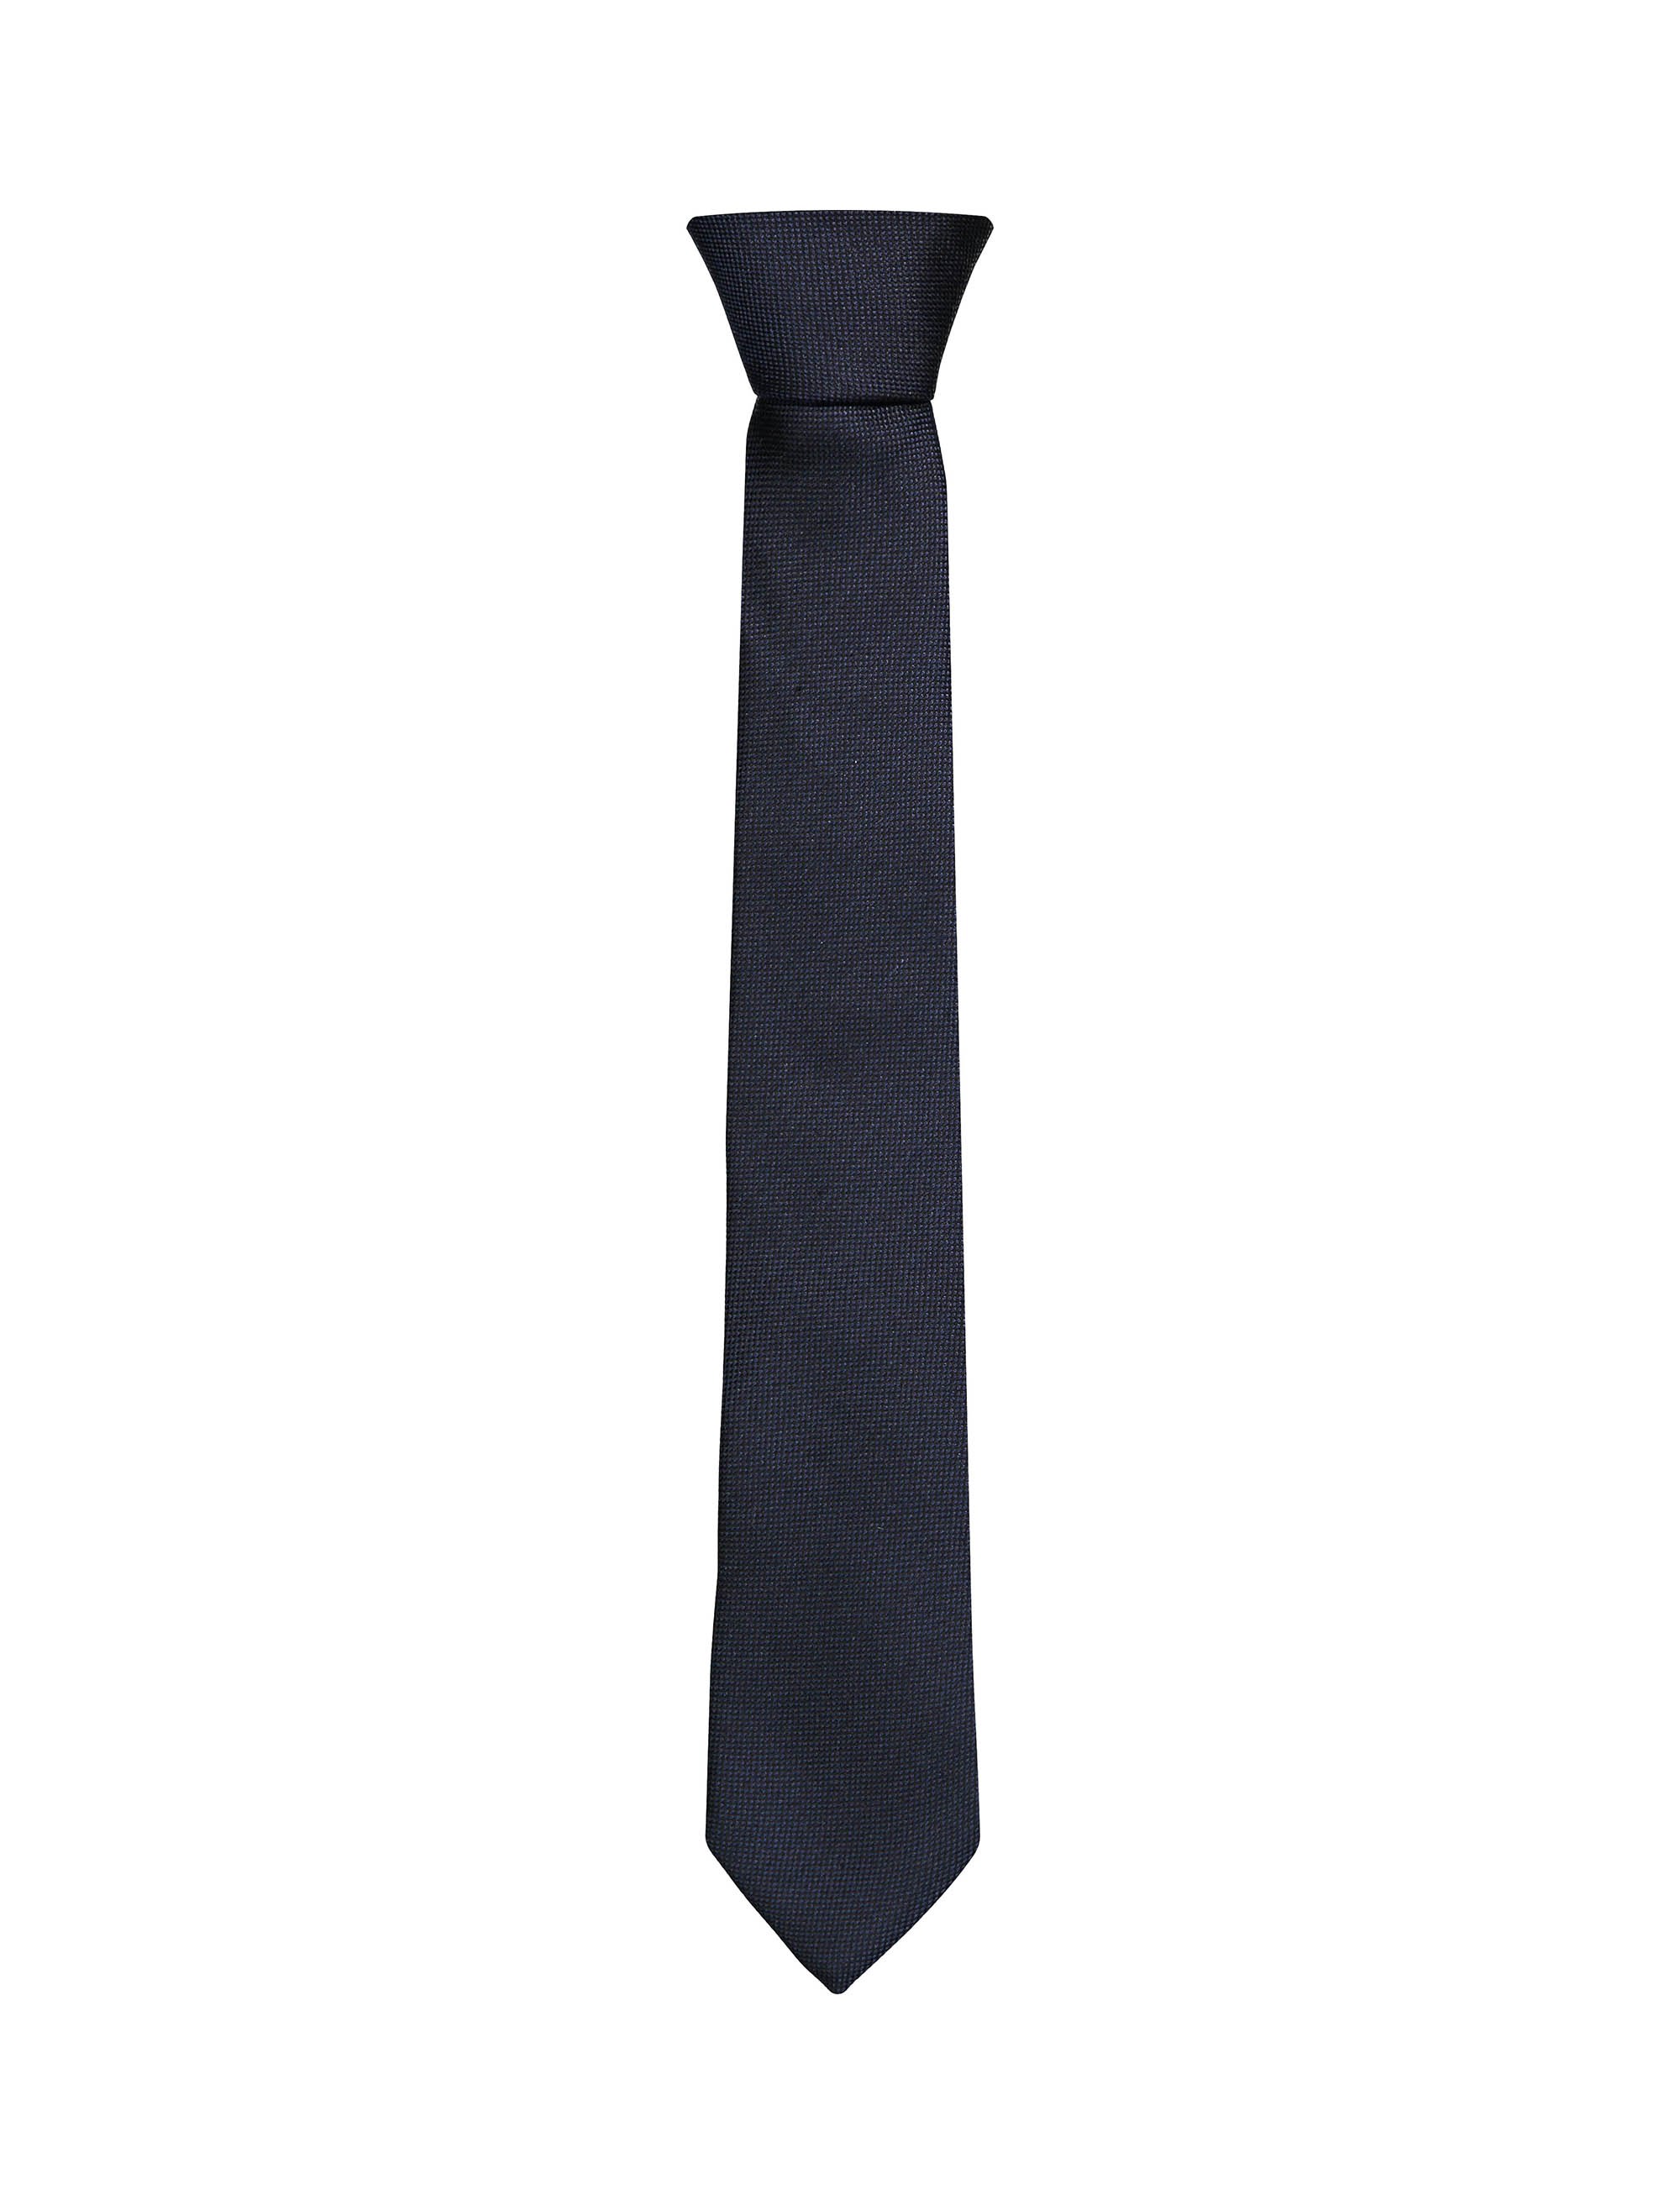 کراوات ابریشمی ساده مردانه - سلیو تک سایز - آبي کاربني - 1